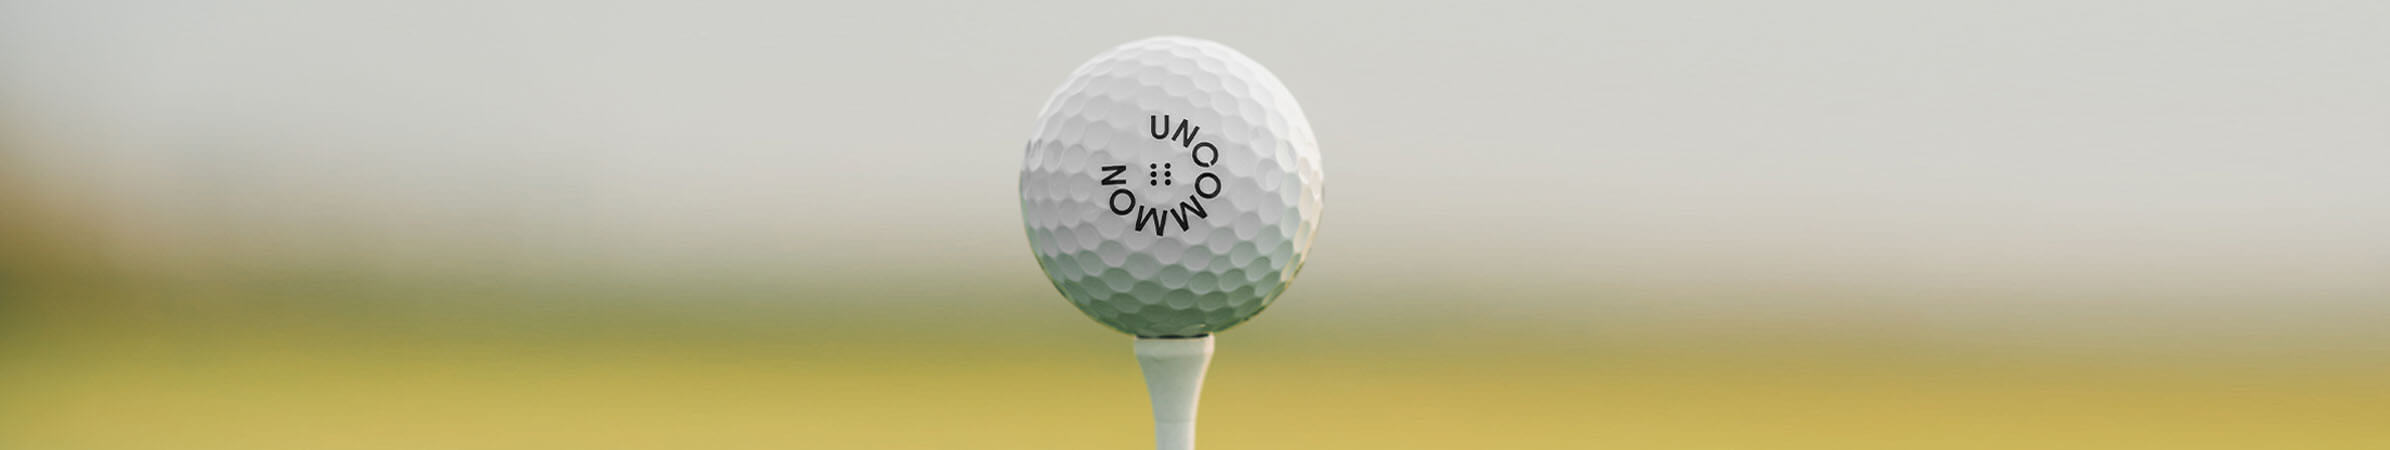 Uncommon Golf